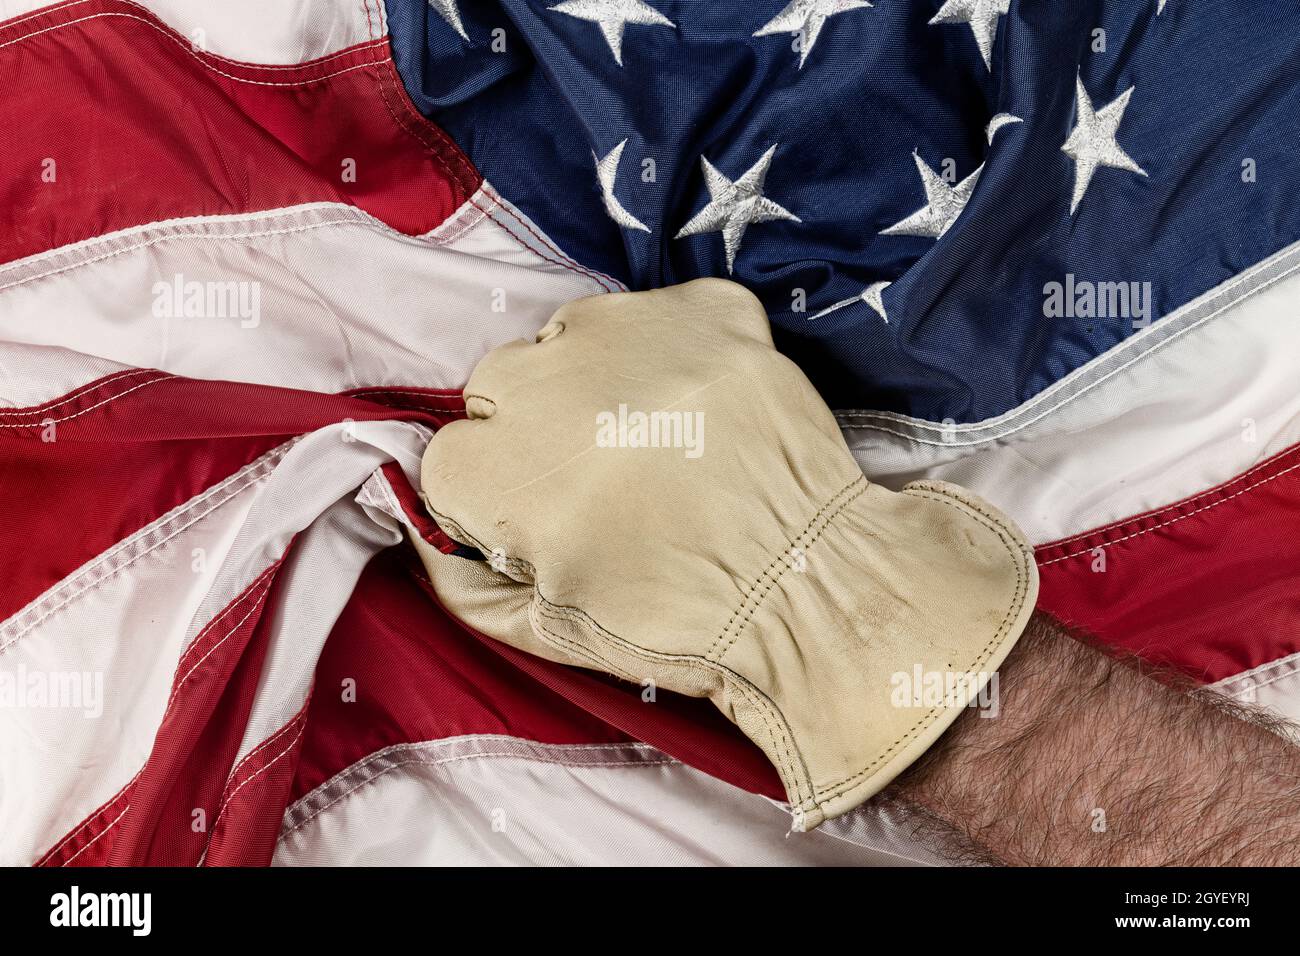 Un homme portant des gants en cuir saisit le drapeau américain dans la frustration et la colère tandis que la politique gouvernementale déplace les emplois de col bleu à l'étranger. Banque D'Images